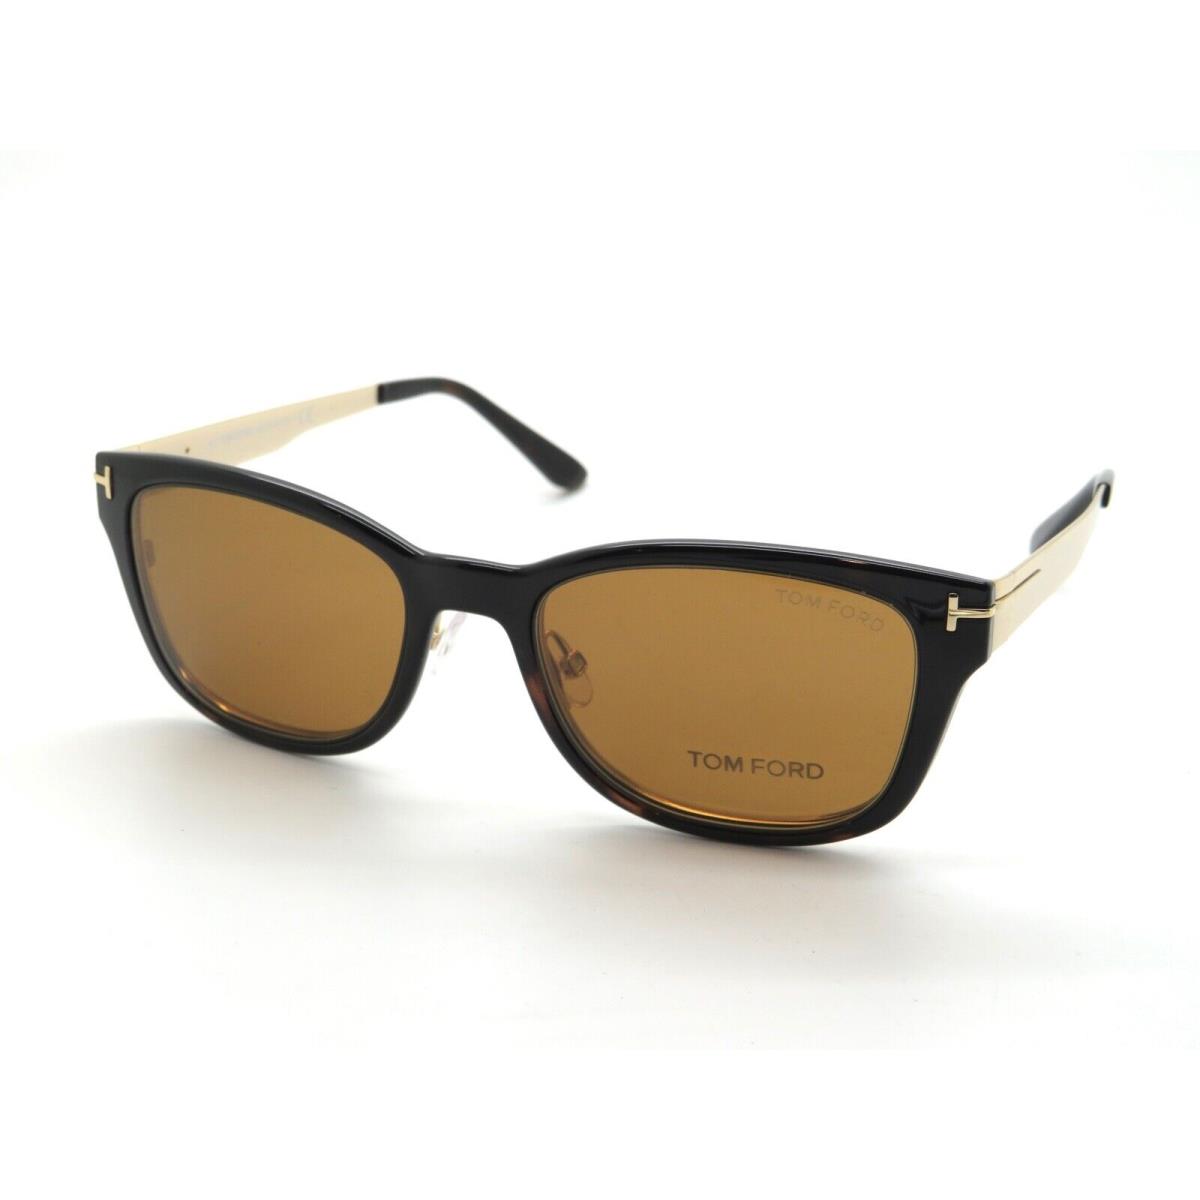 Tom Ford eyeglasses  - Shiny Gold Frame 1